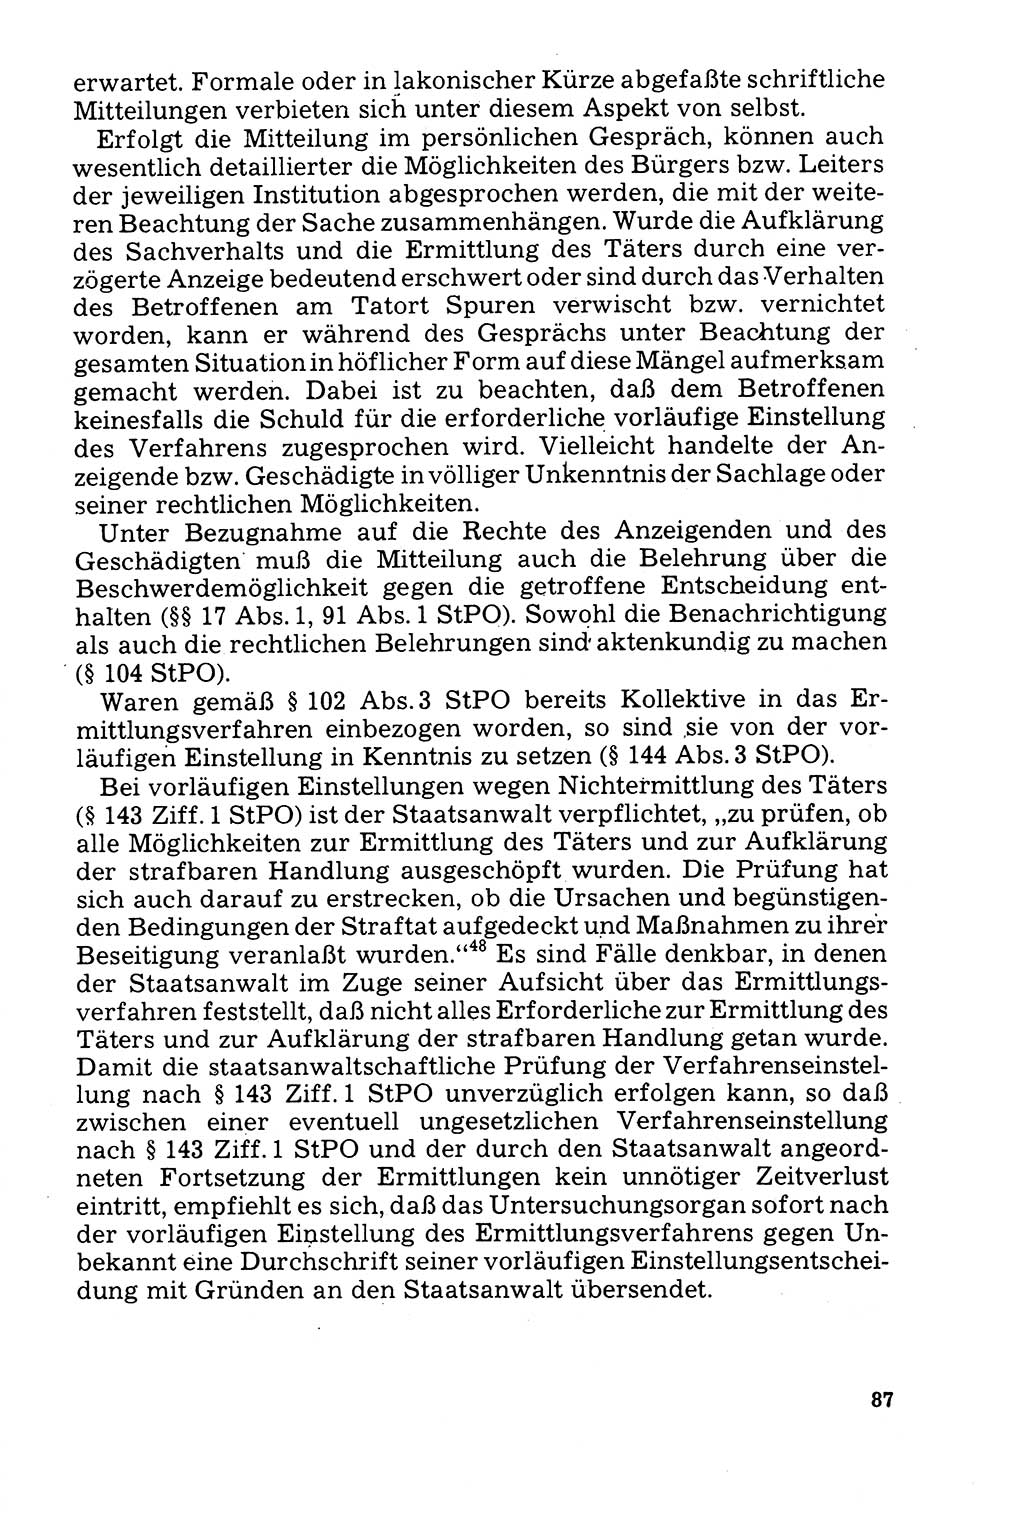 Der Abschluß des Ermittlungsverfahrens [Deutsche Demokratische Republik (DDR)] 1978, Seite 87 (Abschl. EV DDR 1978, S. 87)